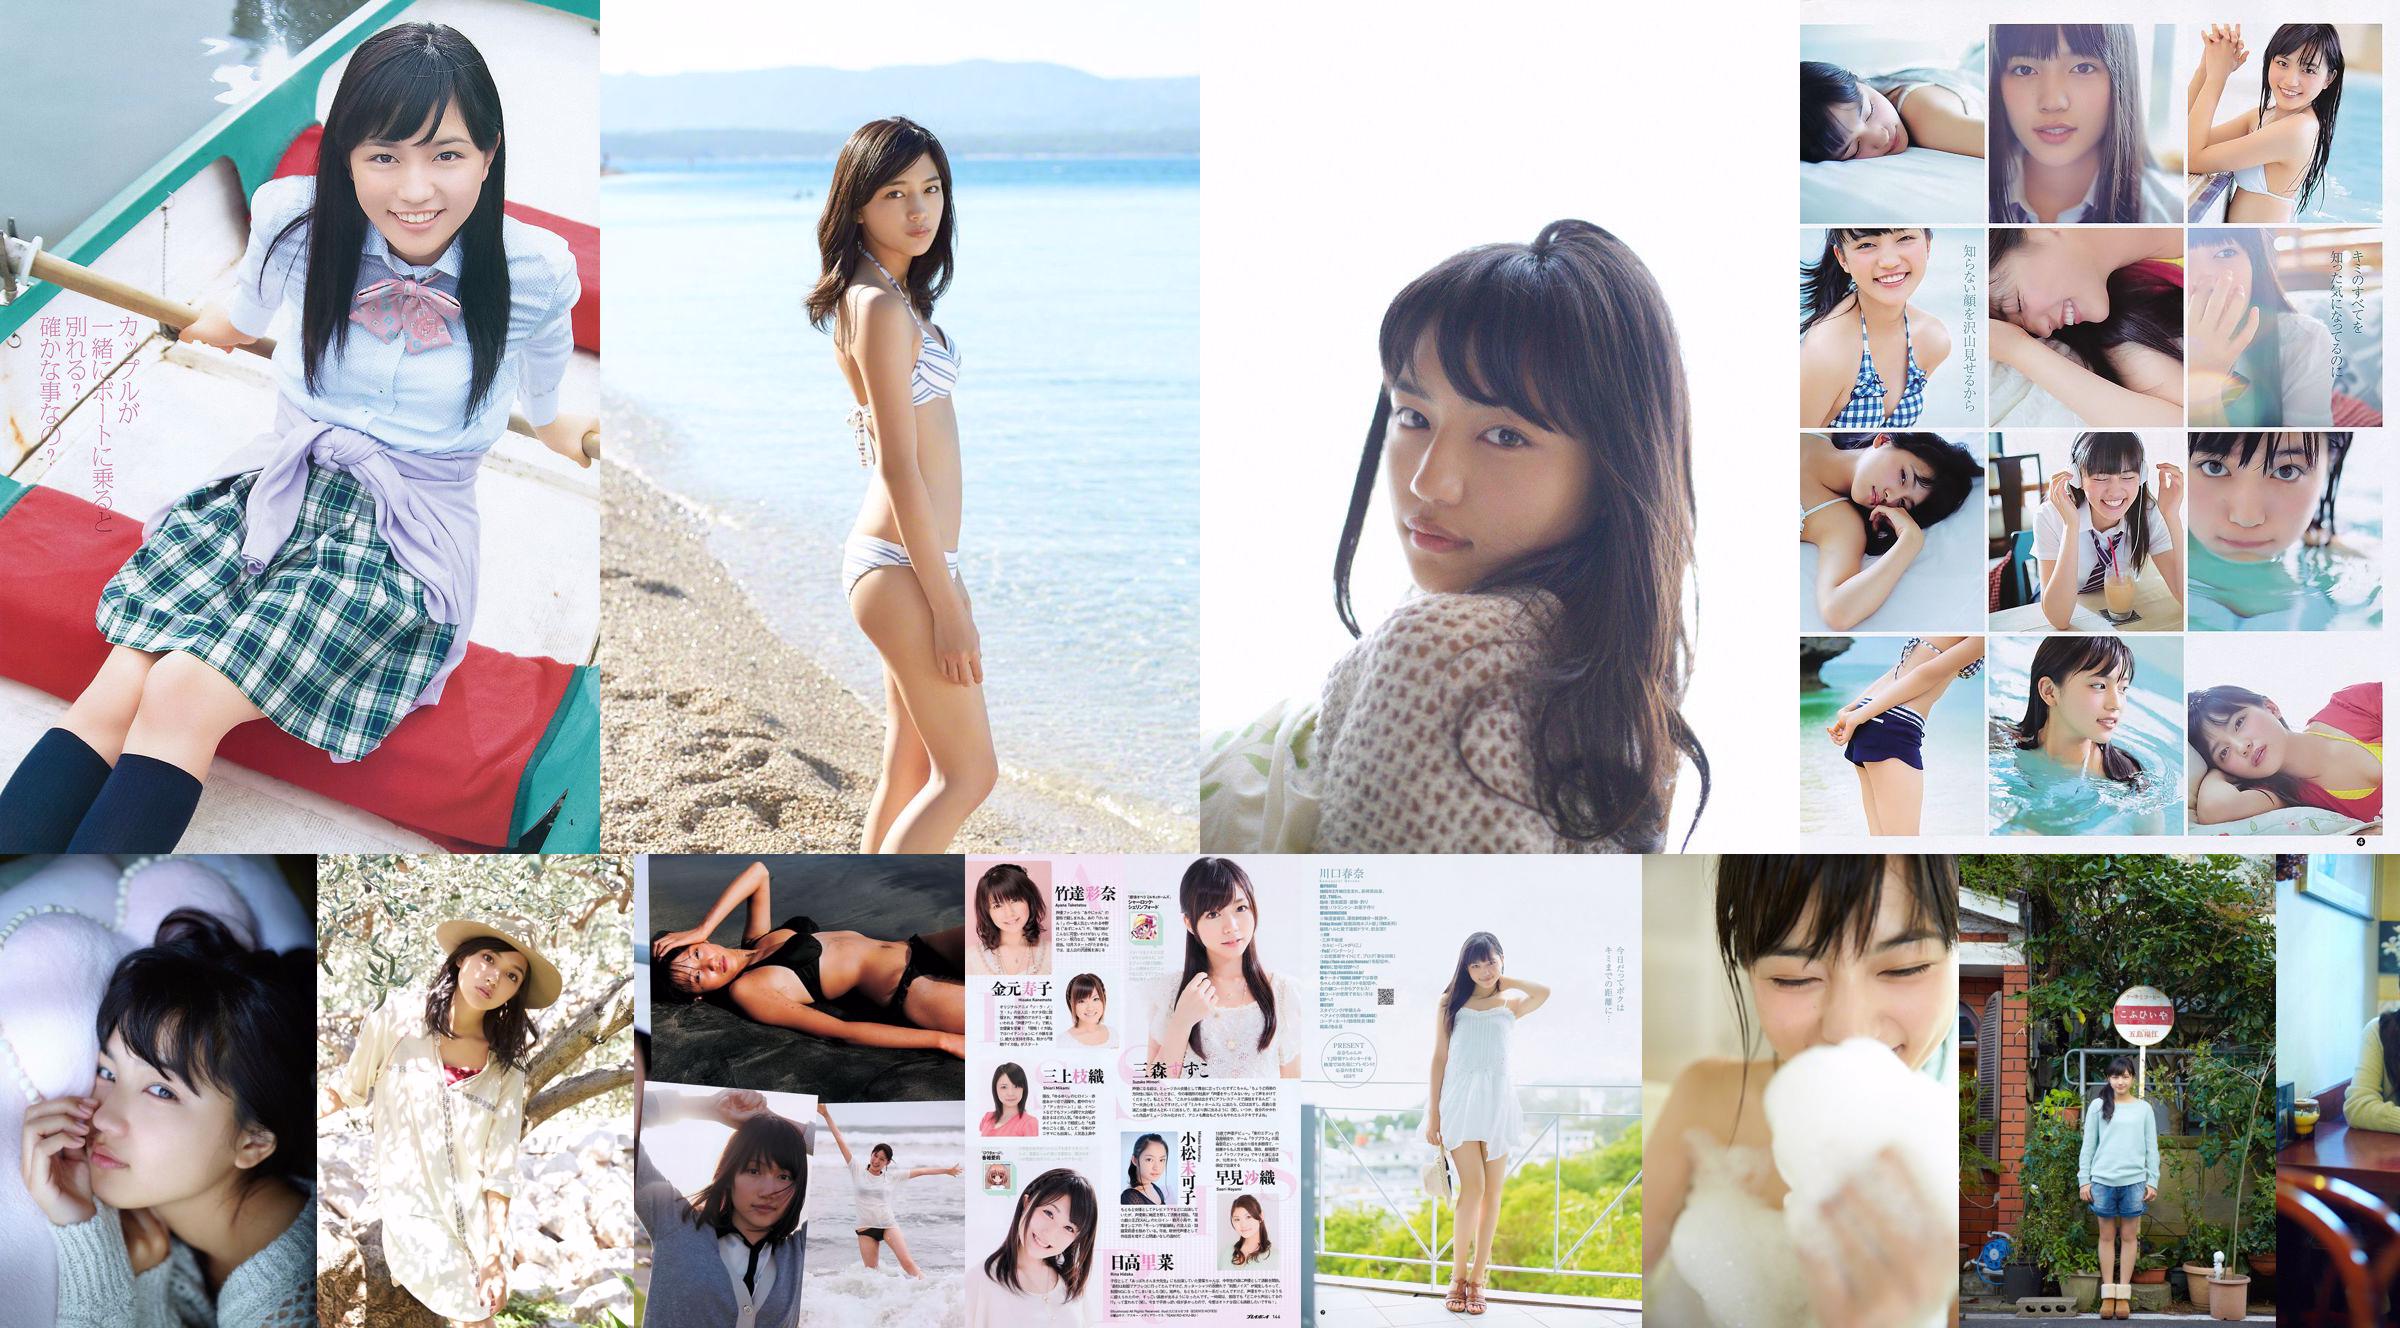 Haruna Kawaguchi Yumi Sugimoto [Salto settimanale per giovani] 2012 No.18 Fotografia No.dec5f1 Pagina 1